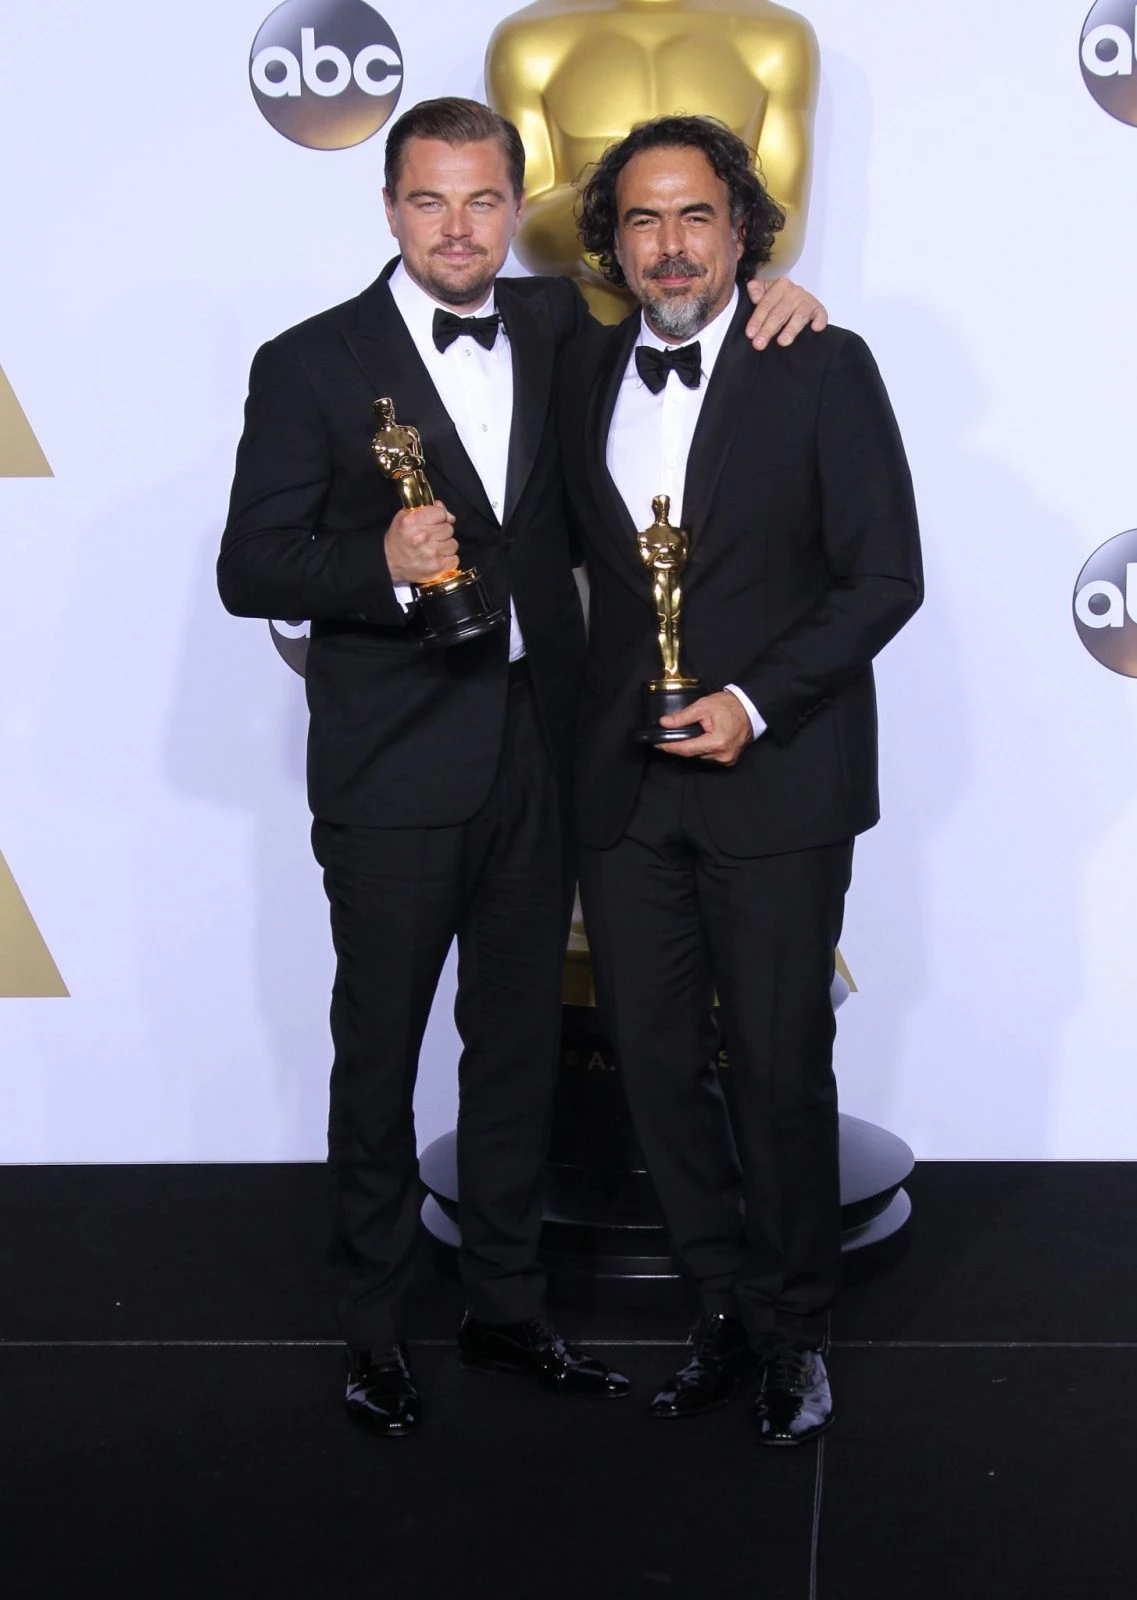 Oscar 2016: Οι νικητές και τα highlights της λαμπερής βραδιάς - εικόνα 3